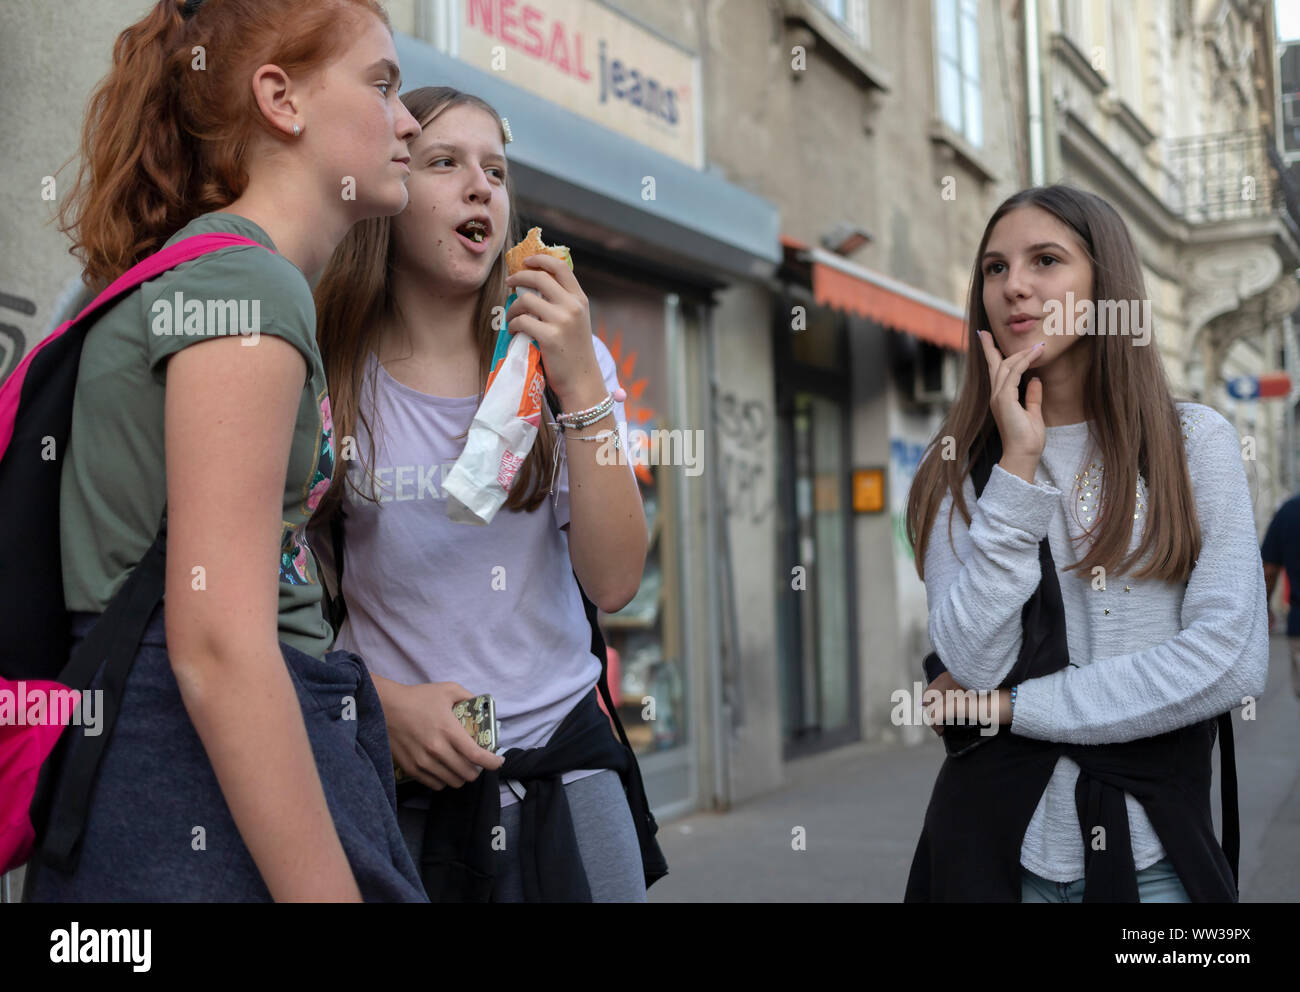 Belgrado, Serbia, 10 de septiembre de 2019: escena urbana con tres chicas adolescentes de pie en la calle y charlar Foto de stock